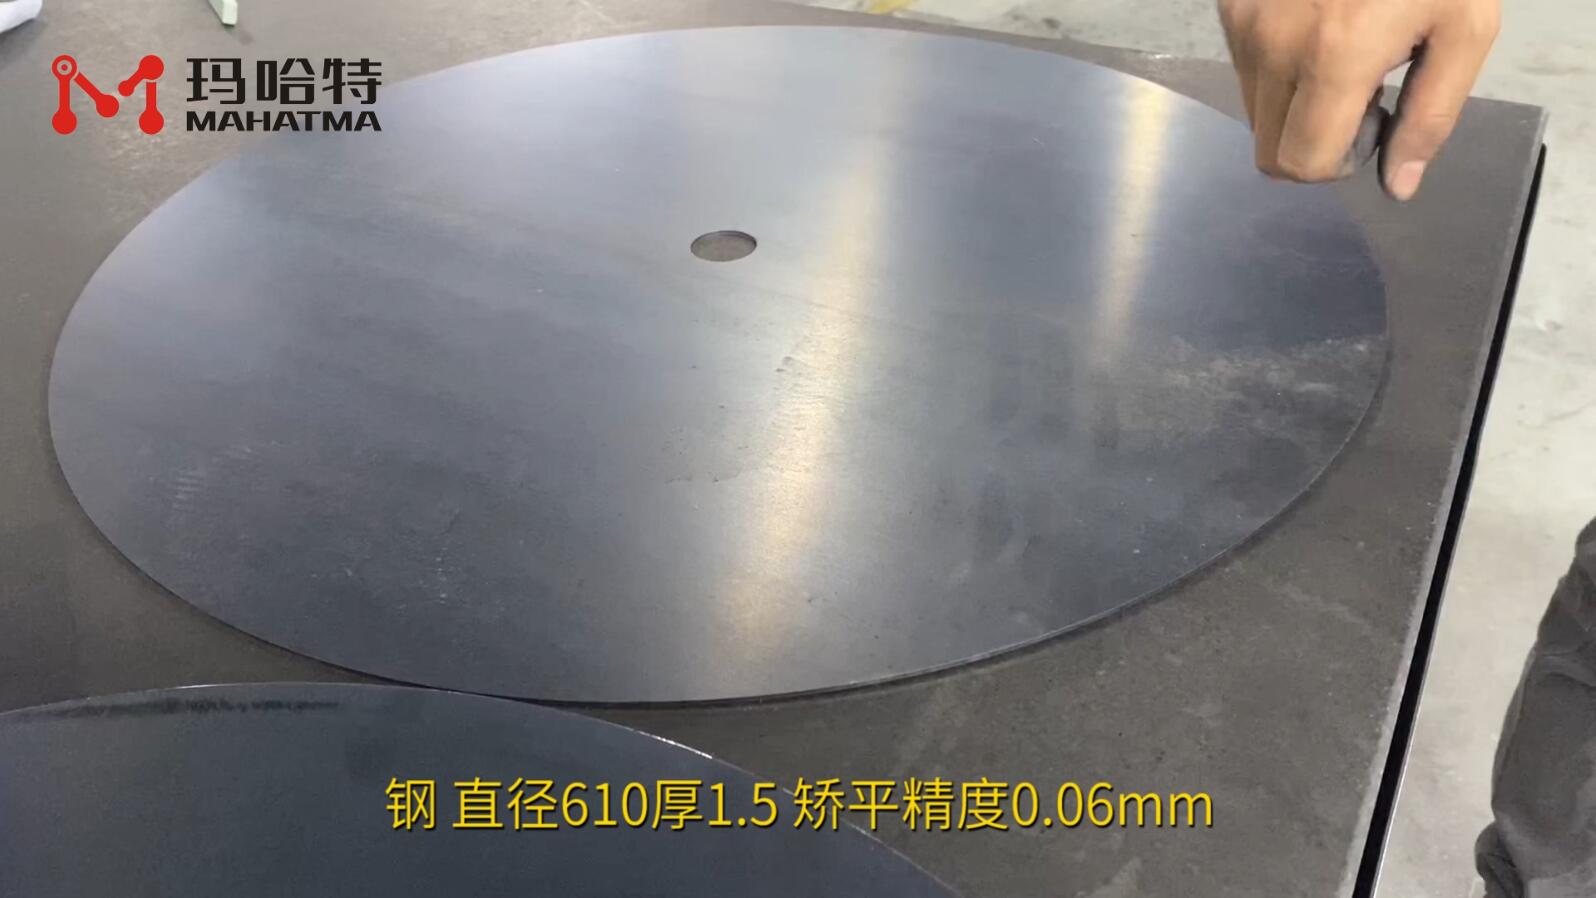 钢 MHT50-1300 圆形 直径610厚1.5mm